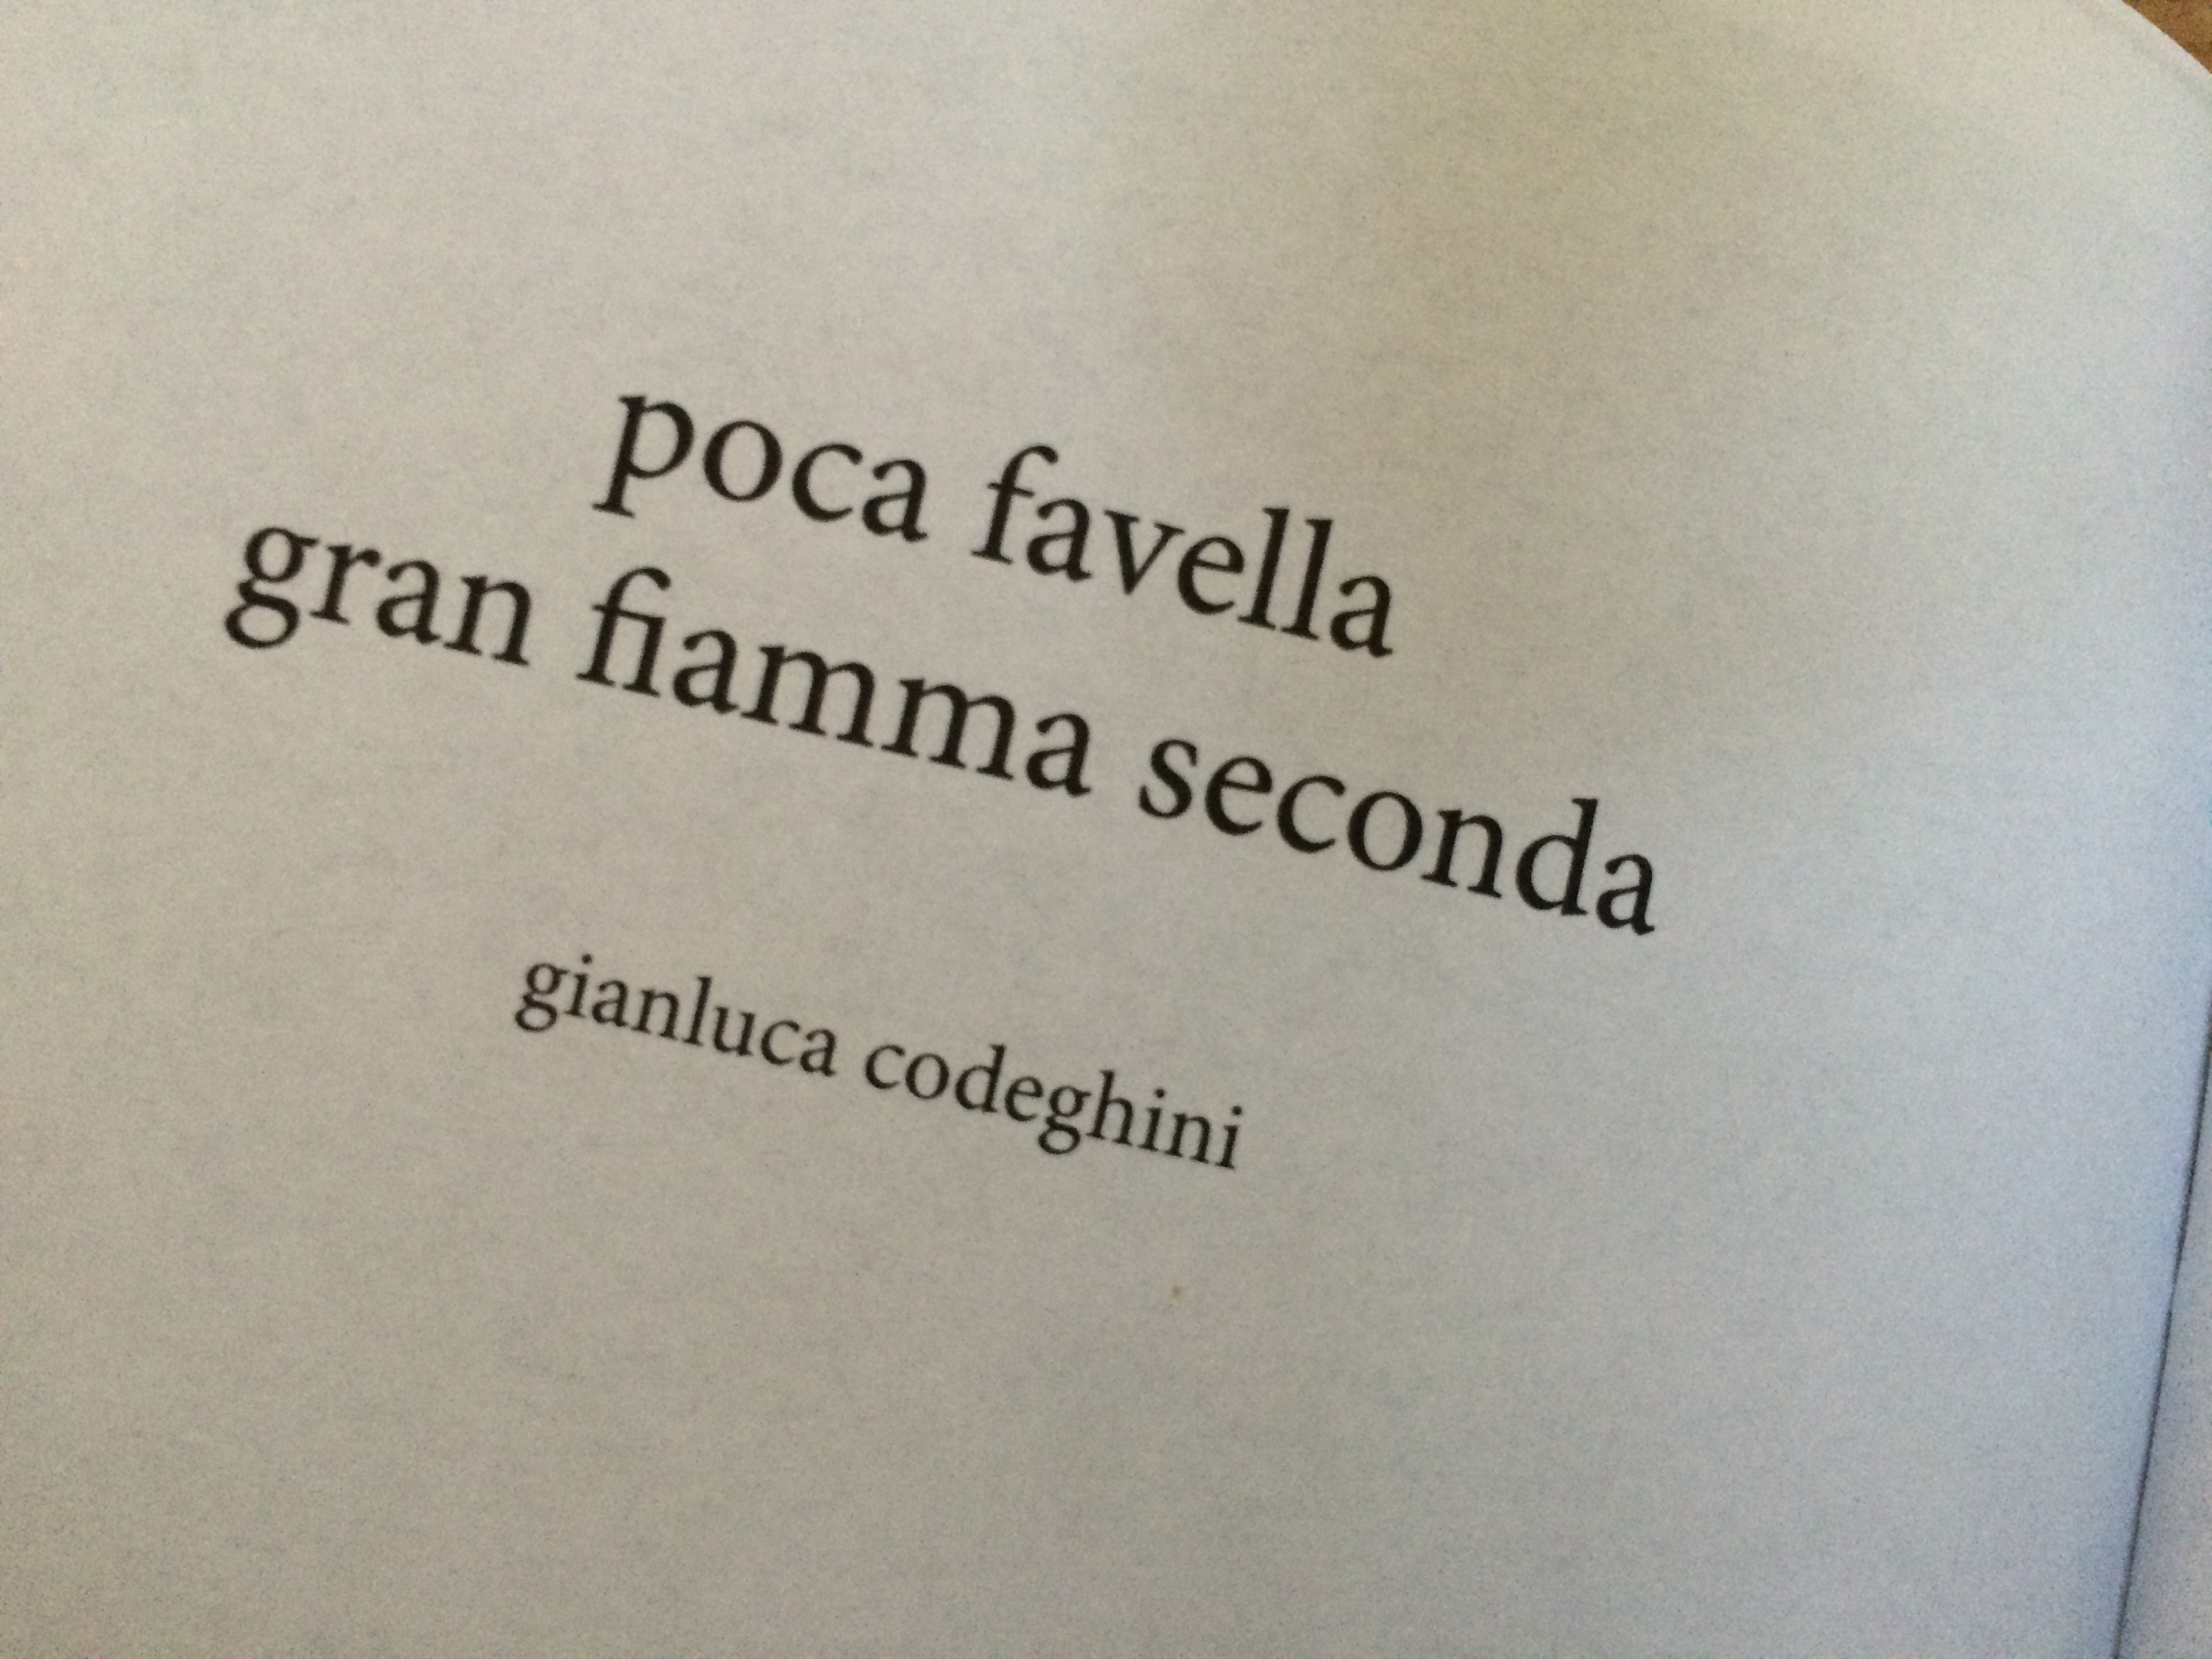 Gianluca Codeghini - poca favella gran fiamma seconda